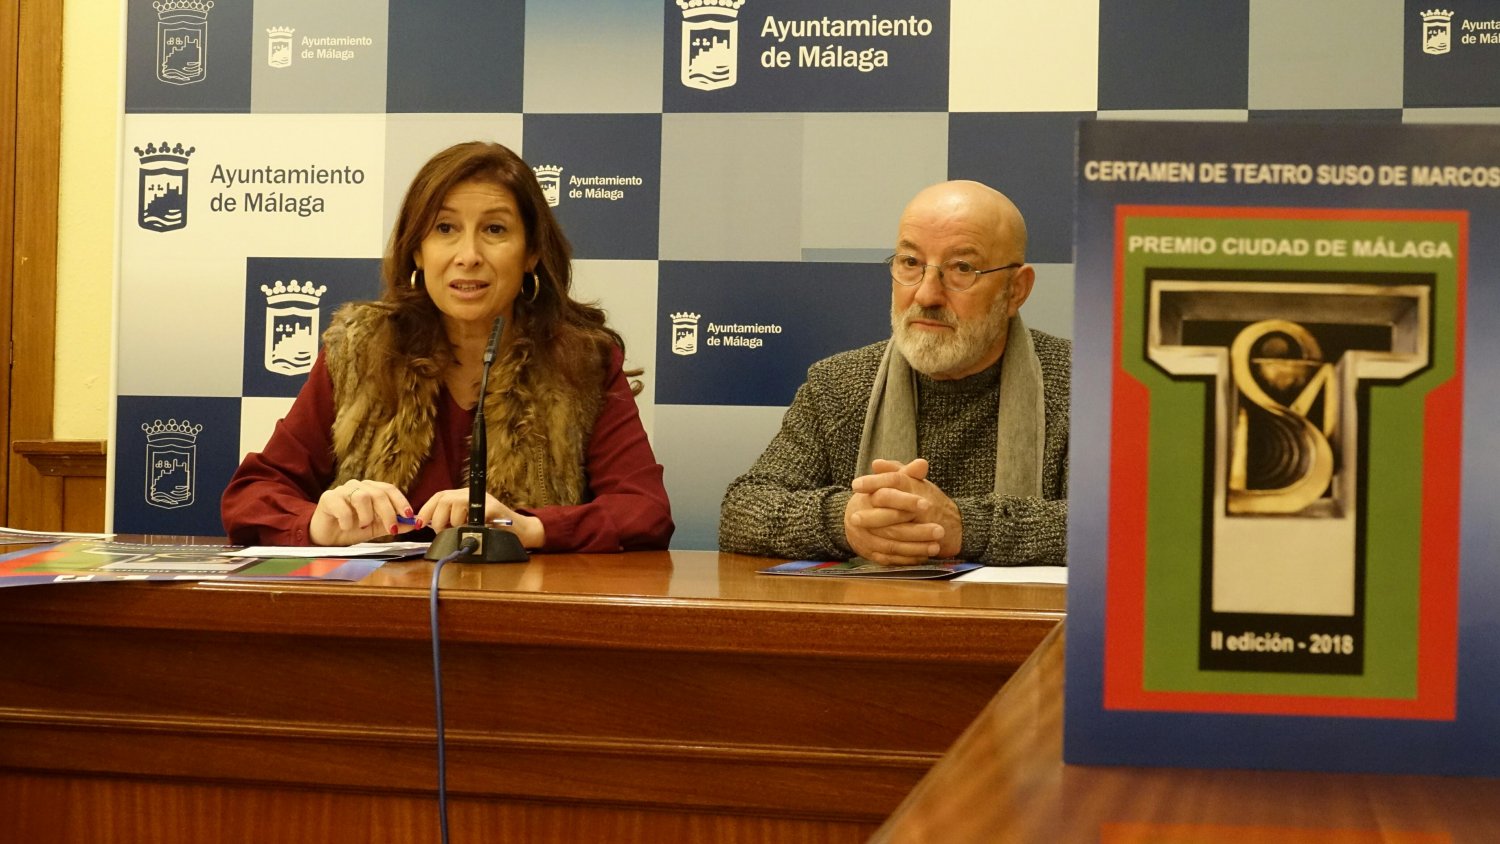 El certamen de teatro 'Suso de Marcos-Premio Ciudad de Málaga' llega a su segunda edición